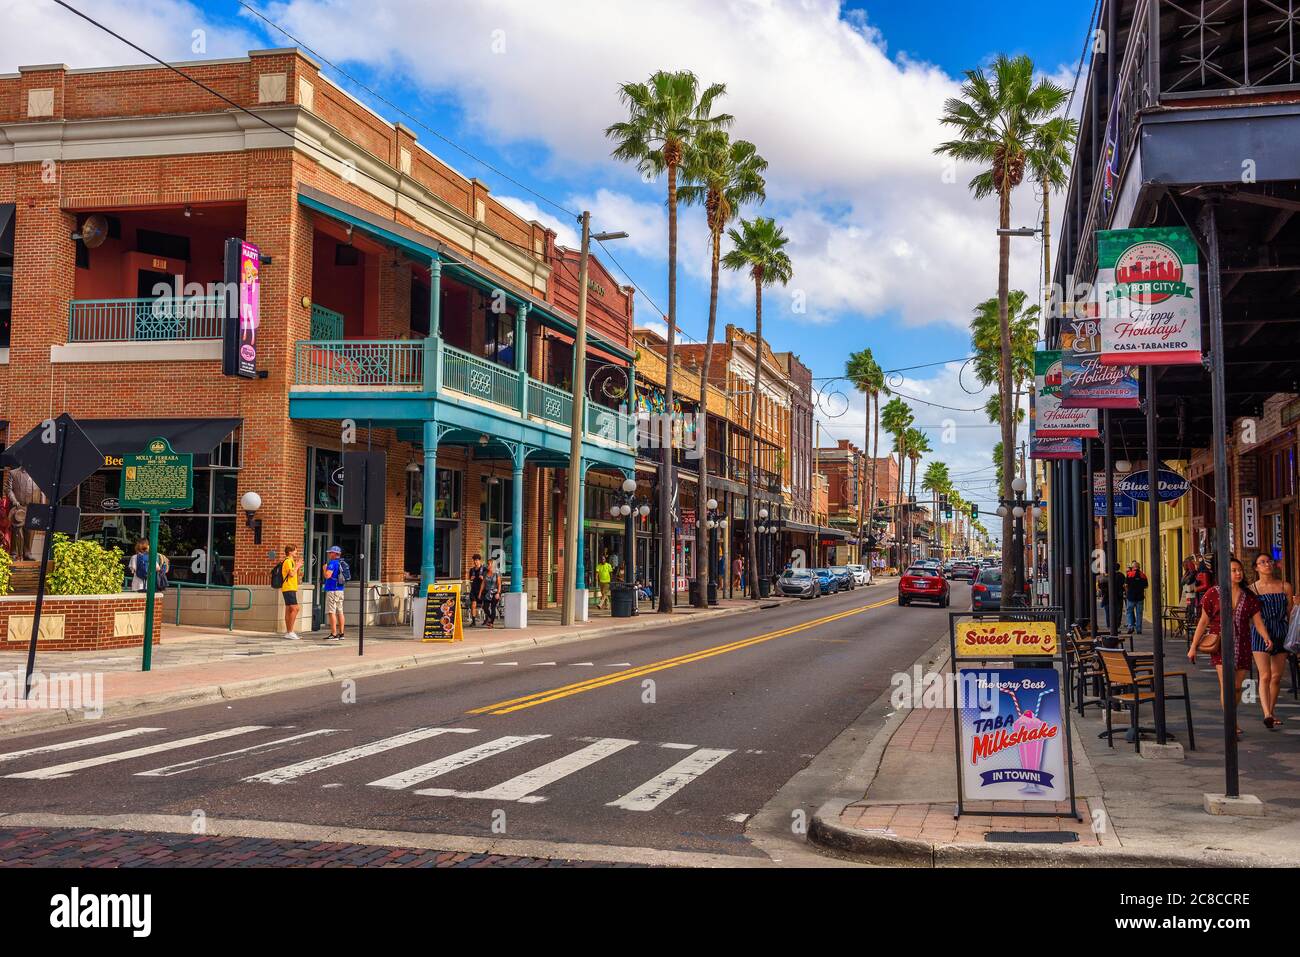 Ybor City, Tampa Bay, Florida. USA - 11. Januar 2020 : berühmte 7th Avenue in der historischen Ybor City, jetzt als National Historic Landmark D bezeichnet Stockfoto